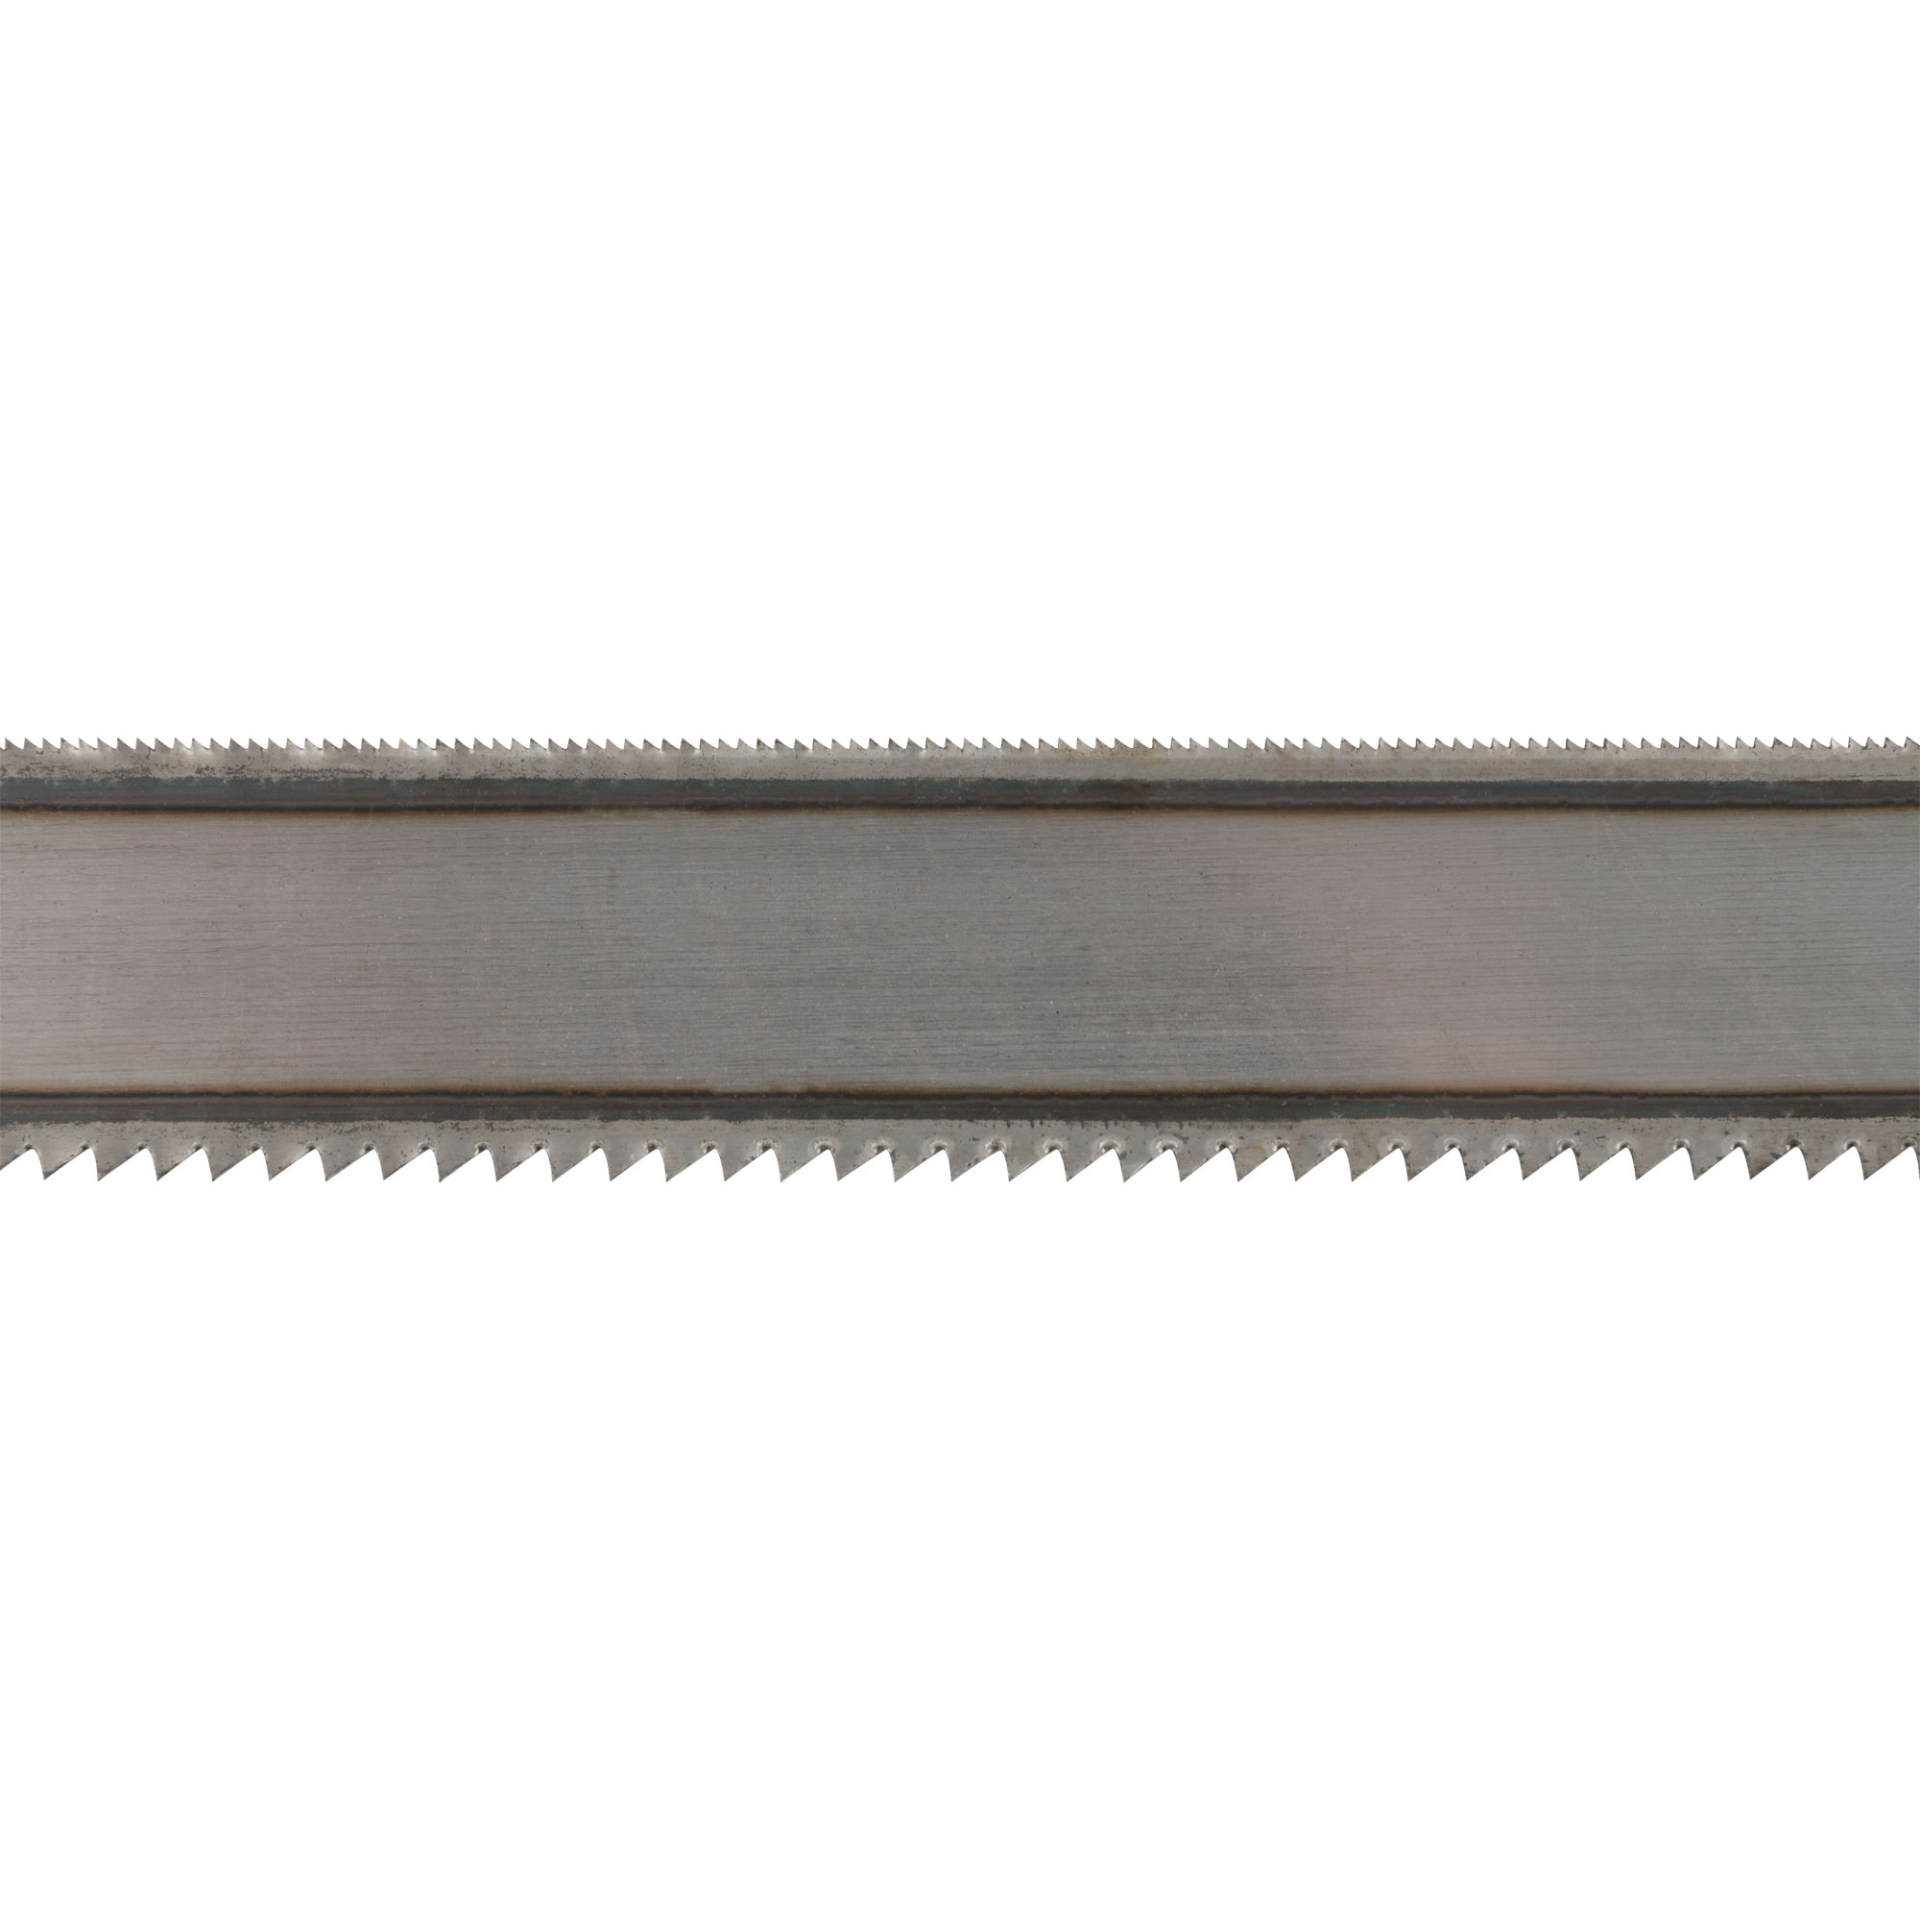 Полотна ножовочные металл/дерево ( 24 TPI / 8 TPI ), каленый зуб, широкие двусторонние, 300х24 мм, 72 шт.